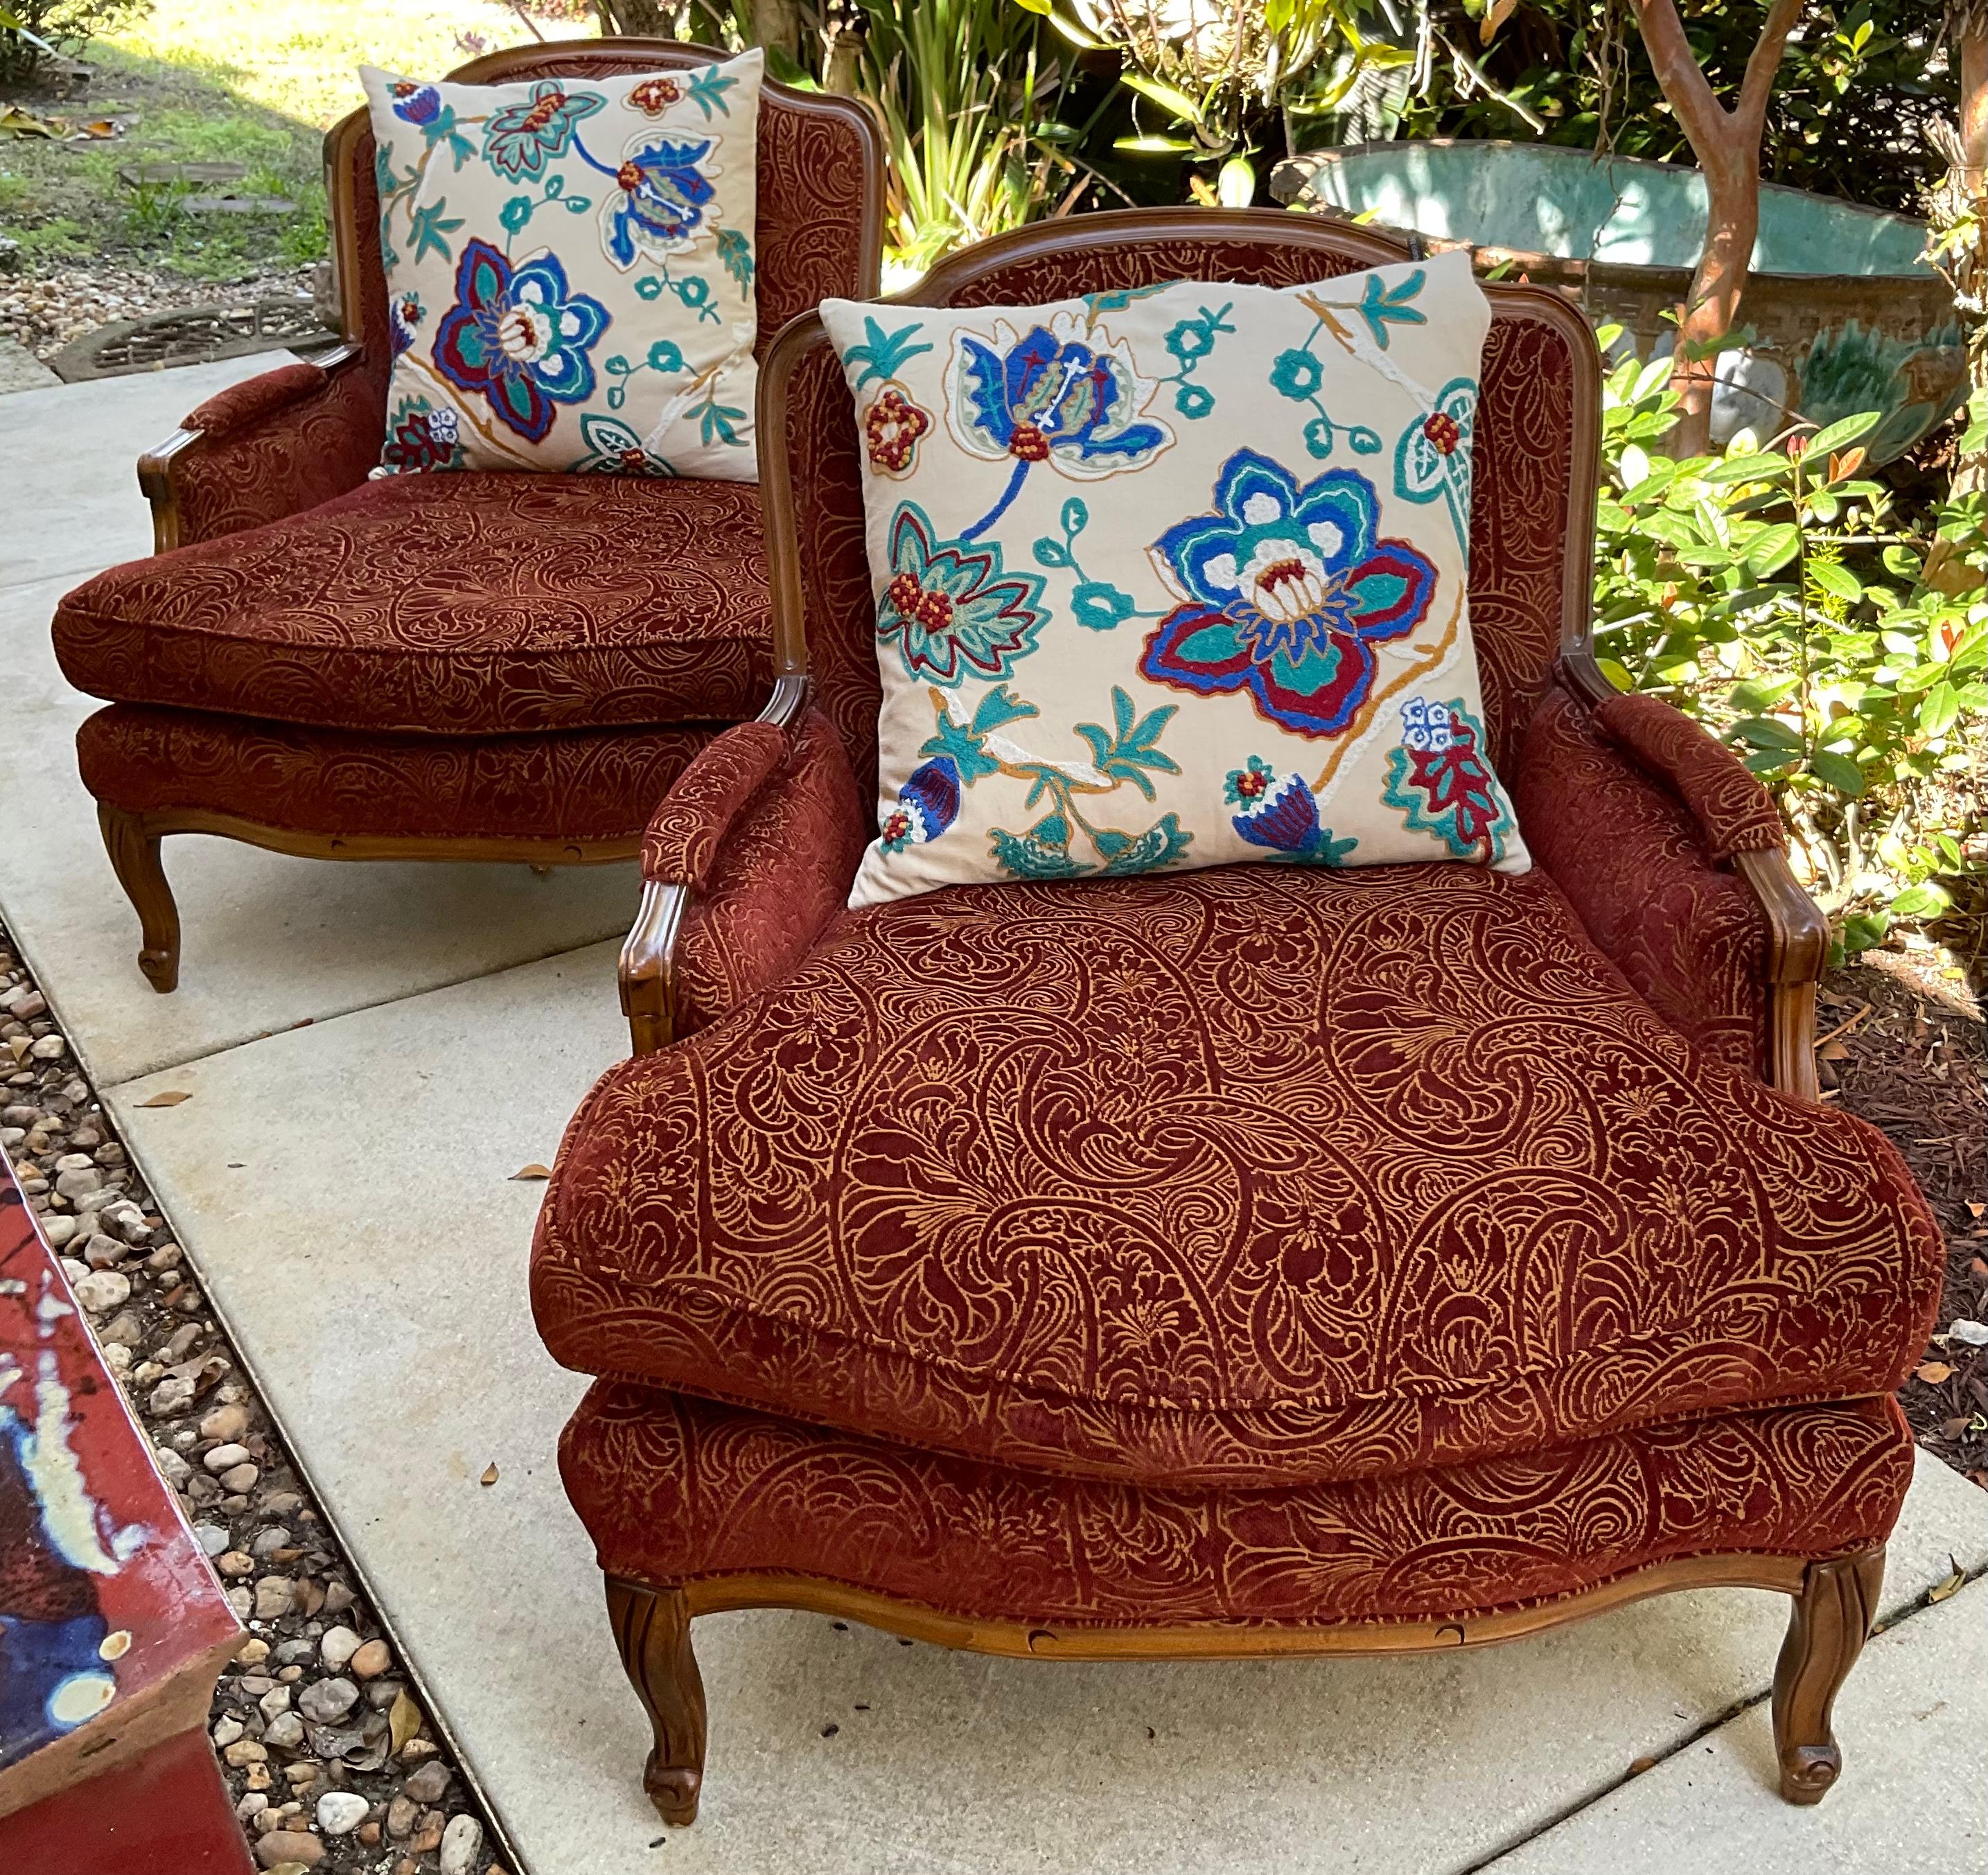 Paar hochwertige, handgeschnitzte Sessel aus Vintage-Holz, französischer Stil, tiefe, übergroße Sitze, gepolstert mit Damast-Stoff. 
Zwei hochwertige große Suzani-Kissen inklusive.